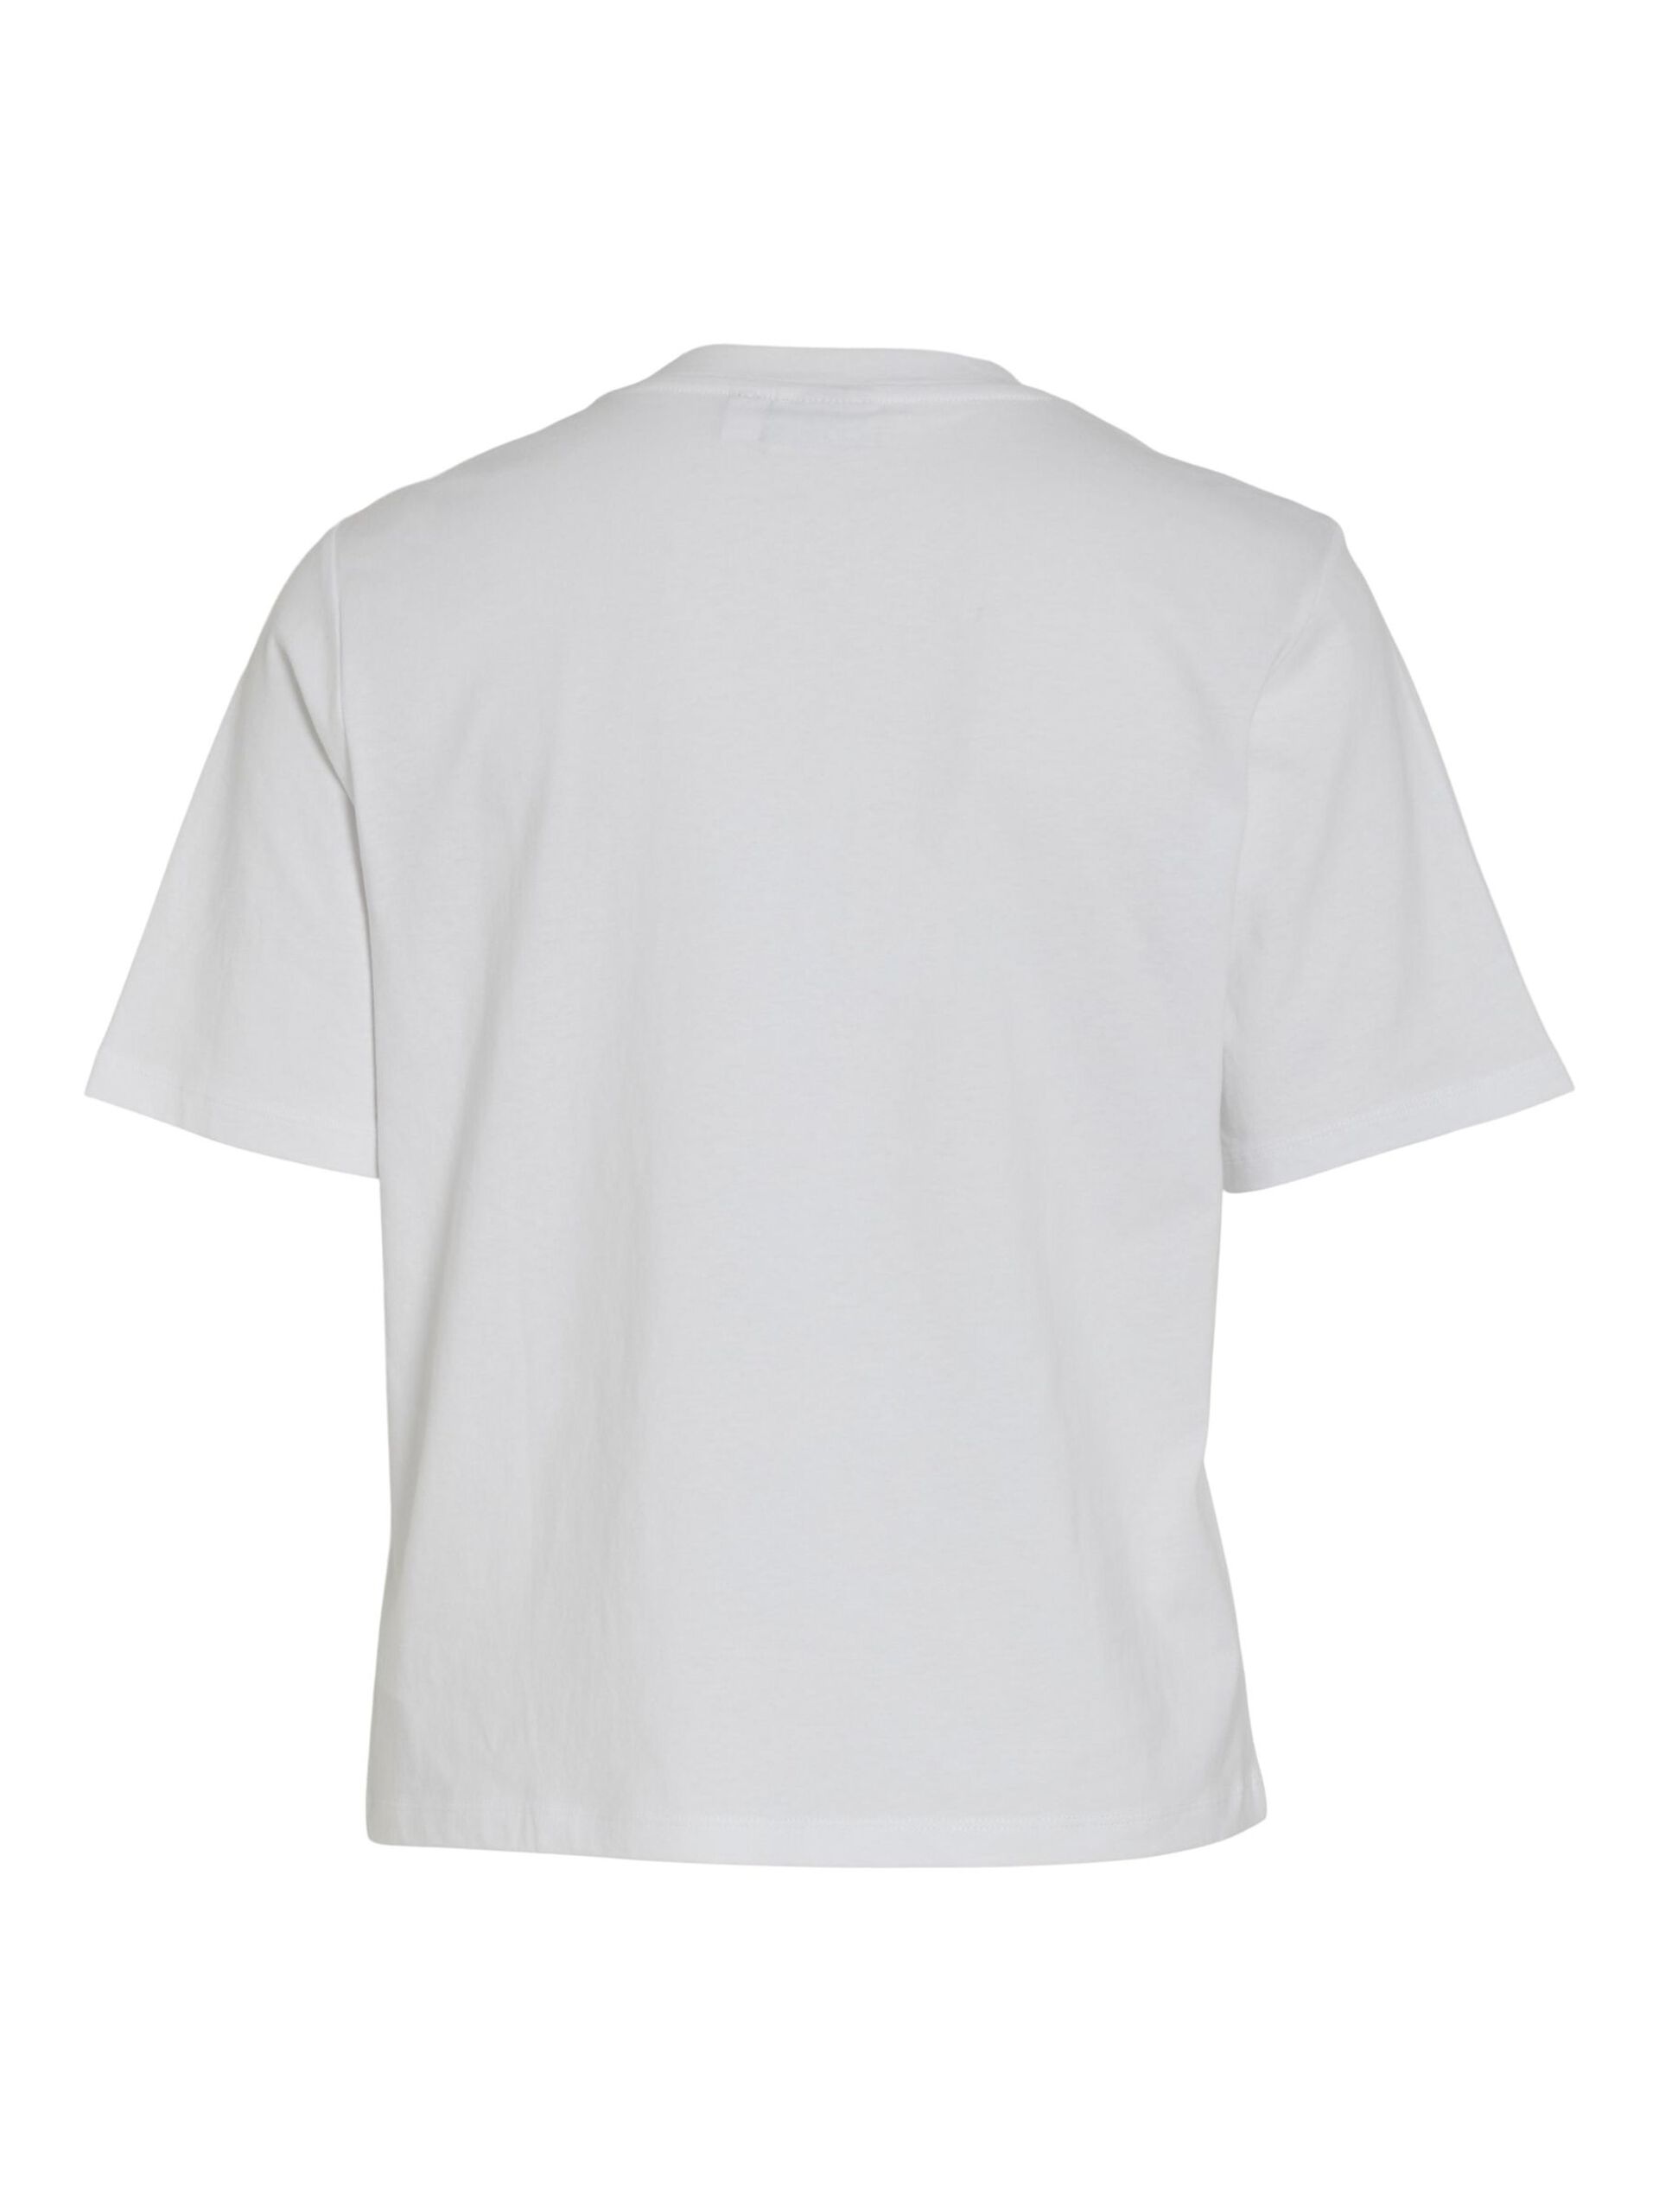 Camiseta básica de algodón modelo Darlene en color blanco con cuello redondo y manga corta. Corte cuadrado. Modelo 14089280 de Vila.